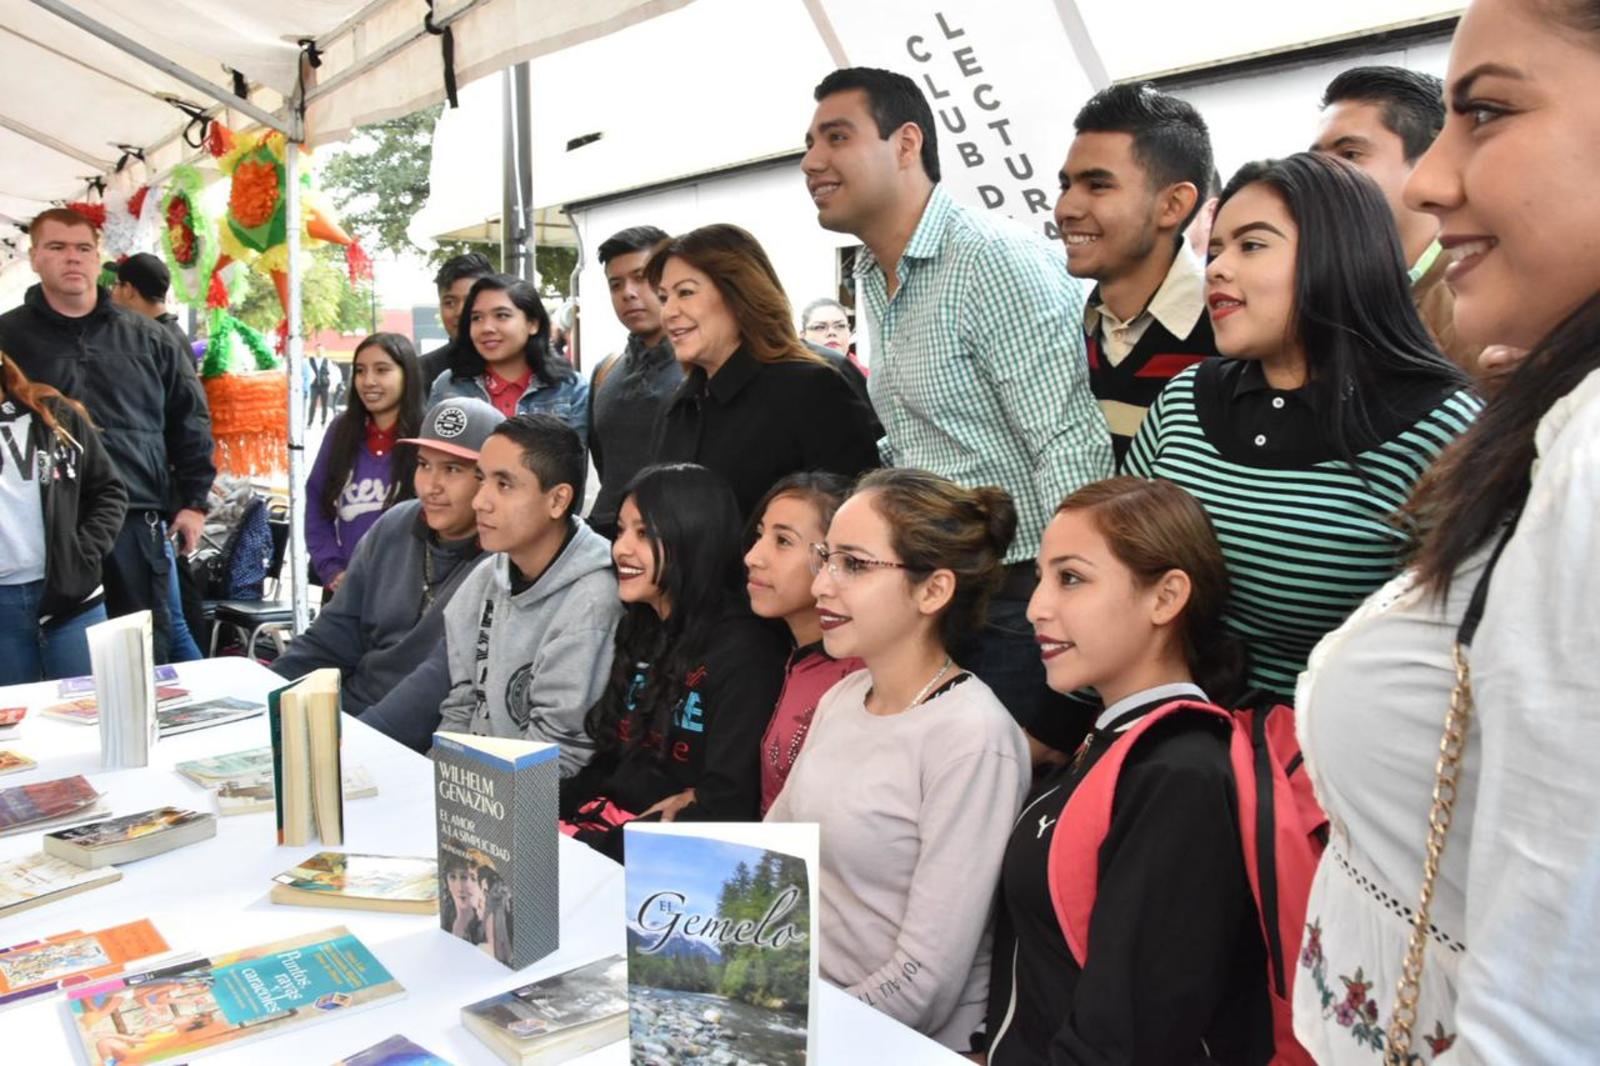 Eventos. La alcaldesa Leticia Herrera Ale, sostuvo un encuentro con jóvenes que participan en diversas actividades. (CORTESÍA)